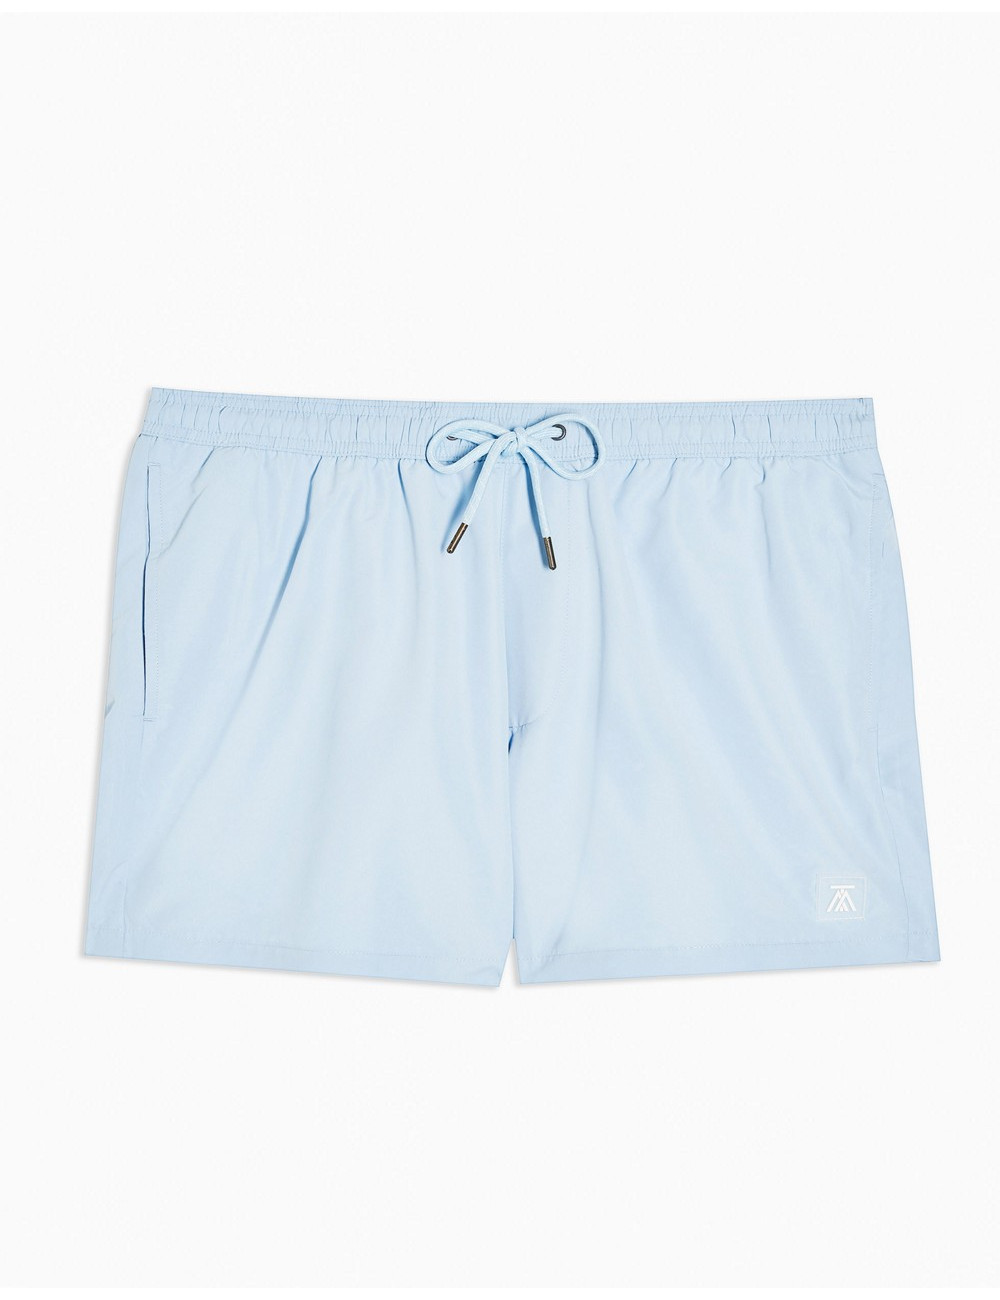 Topman swim shorts in blue